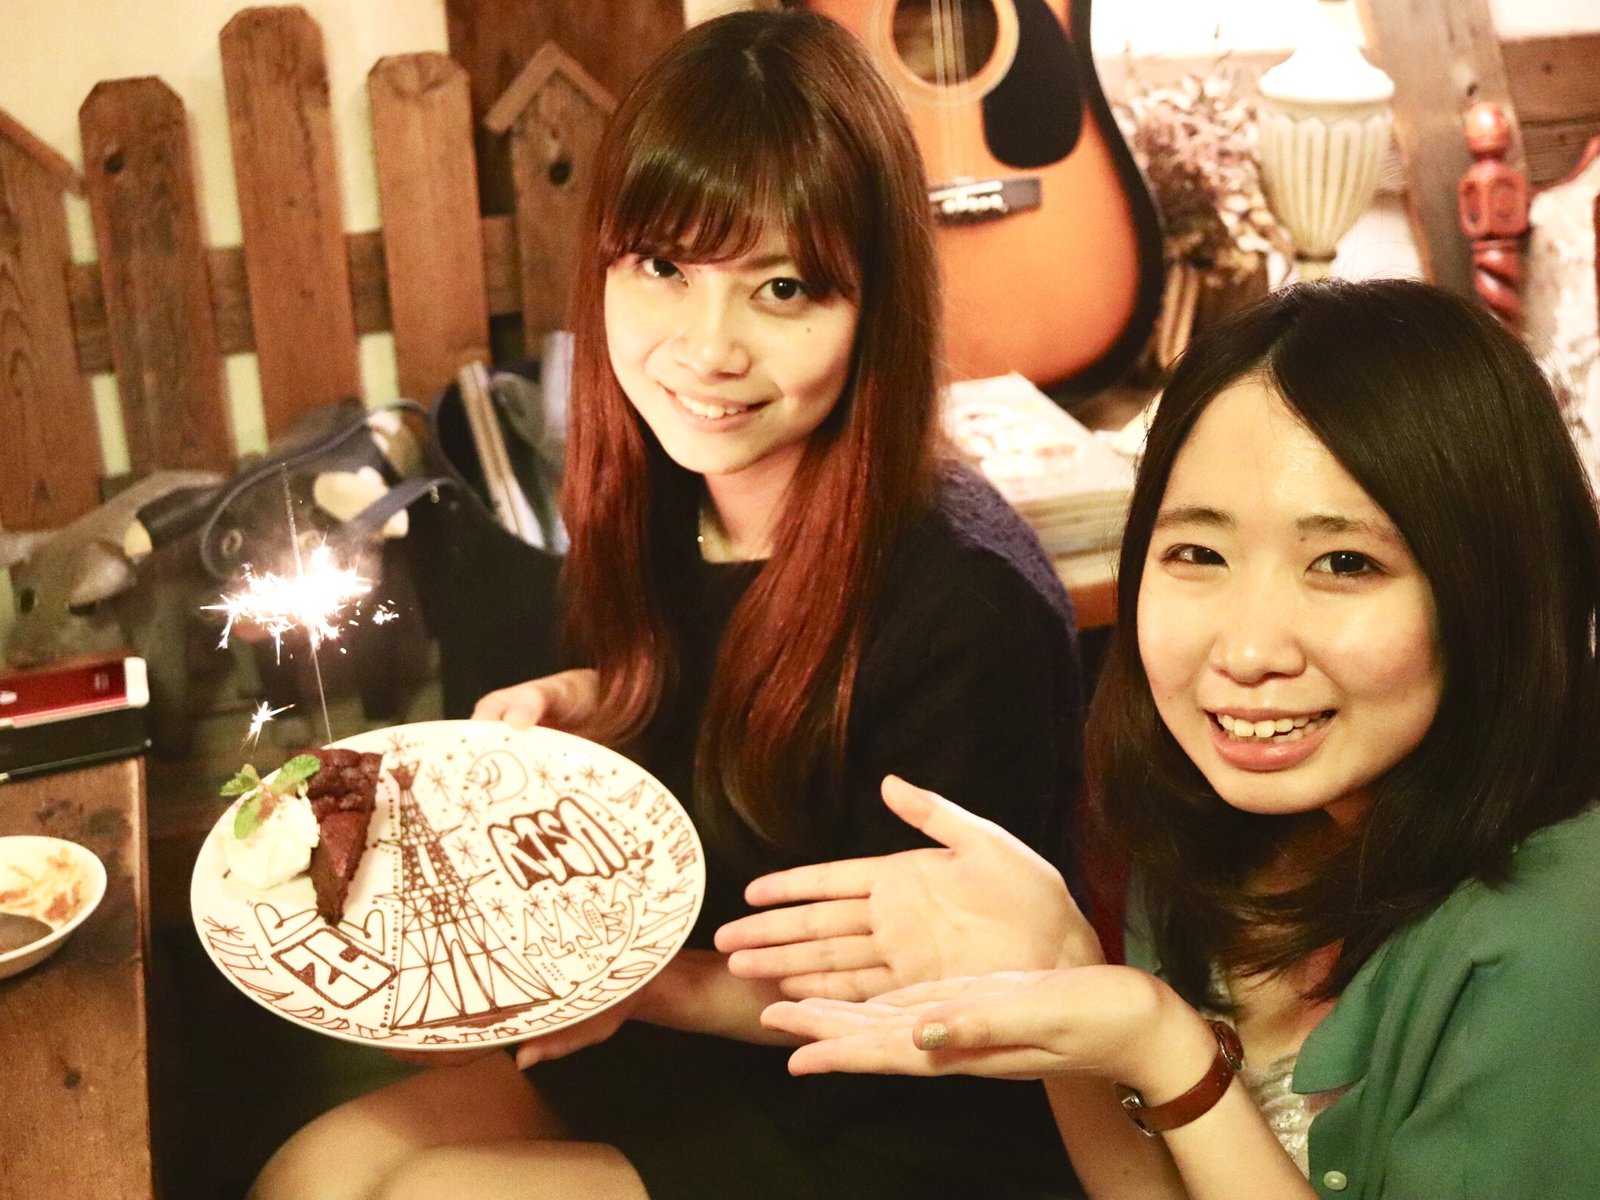 Cafe Okidokei 下北沢の可愛すぎる誕生日プレートで素敵なサプライズを Playlife プレイライフ